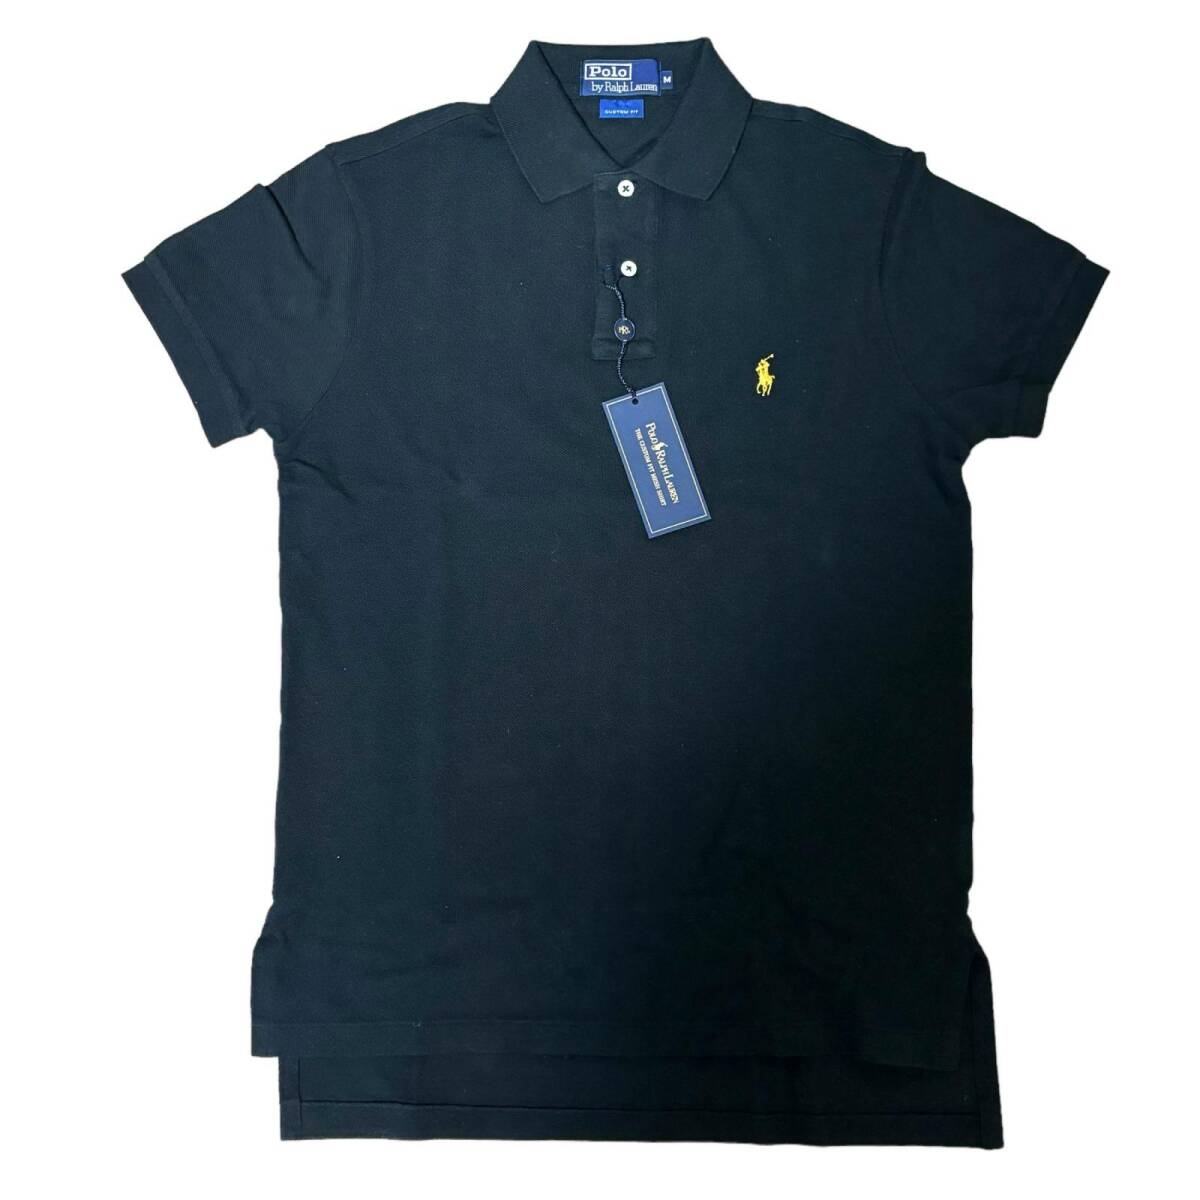 ラルフローレン ポロ カスタムフィット ワンポイントロゴ 半袖 ポロシャツ 黒 サイズMの画像1